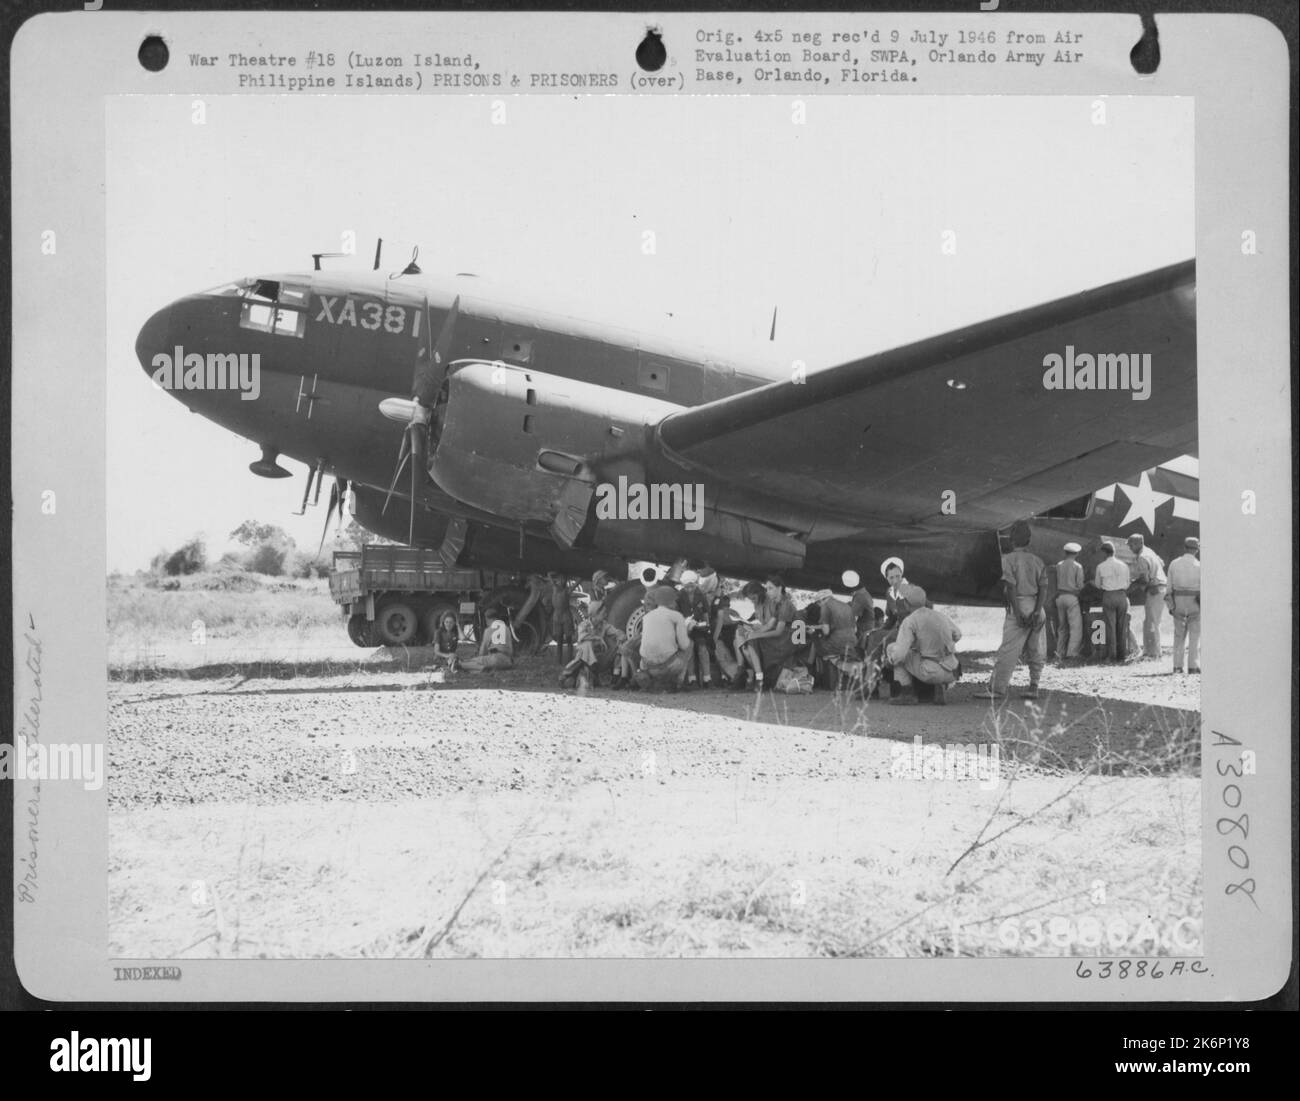 Erste Internierte aus St. Thomas wartet gespannt darauf, im 'Curtiss Commando' C-46 aus dem Quezon Airstrip evakuiert zu werden. Luzon Island, Philippinische Inseln, 1945. Stockfoto